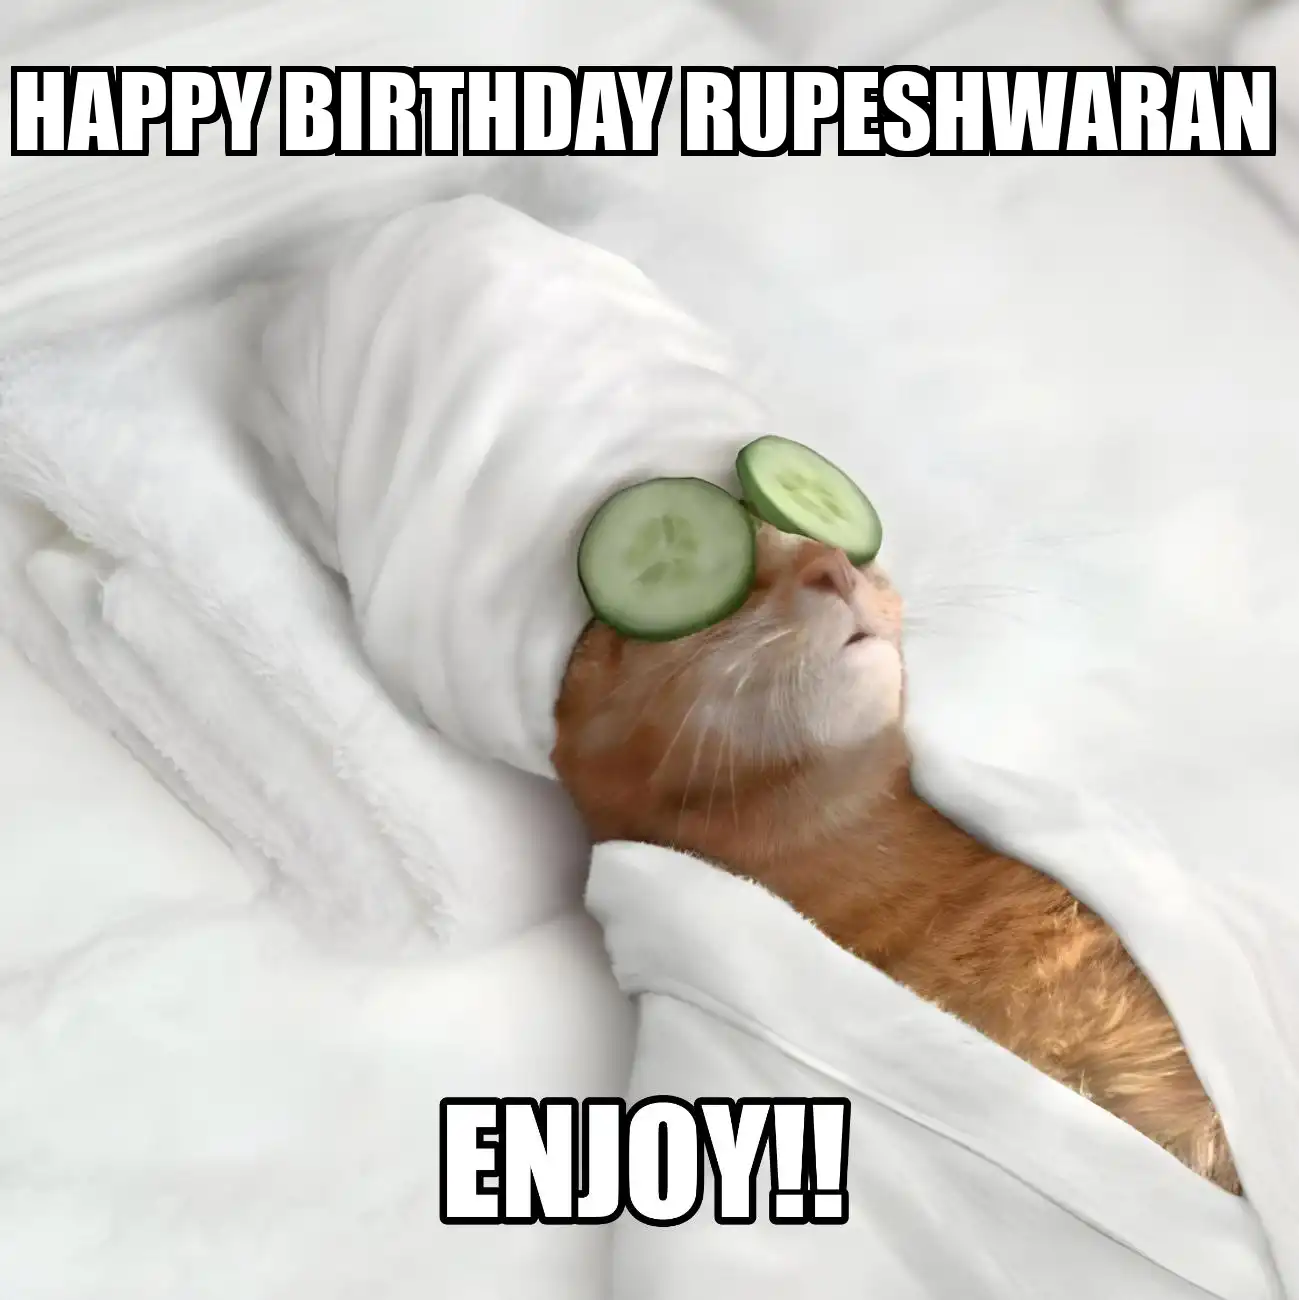 Happy Birthday Rupeshwaran Enjoy Cat Meme